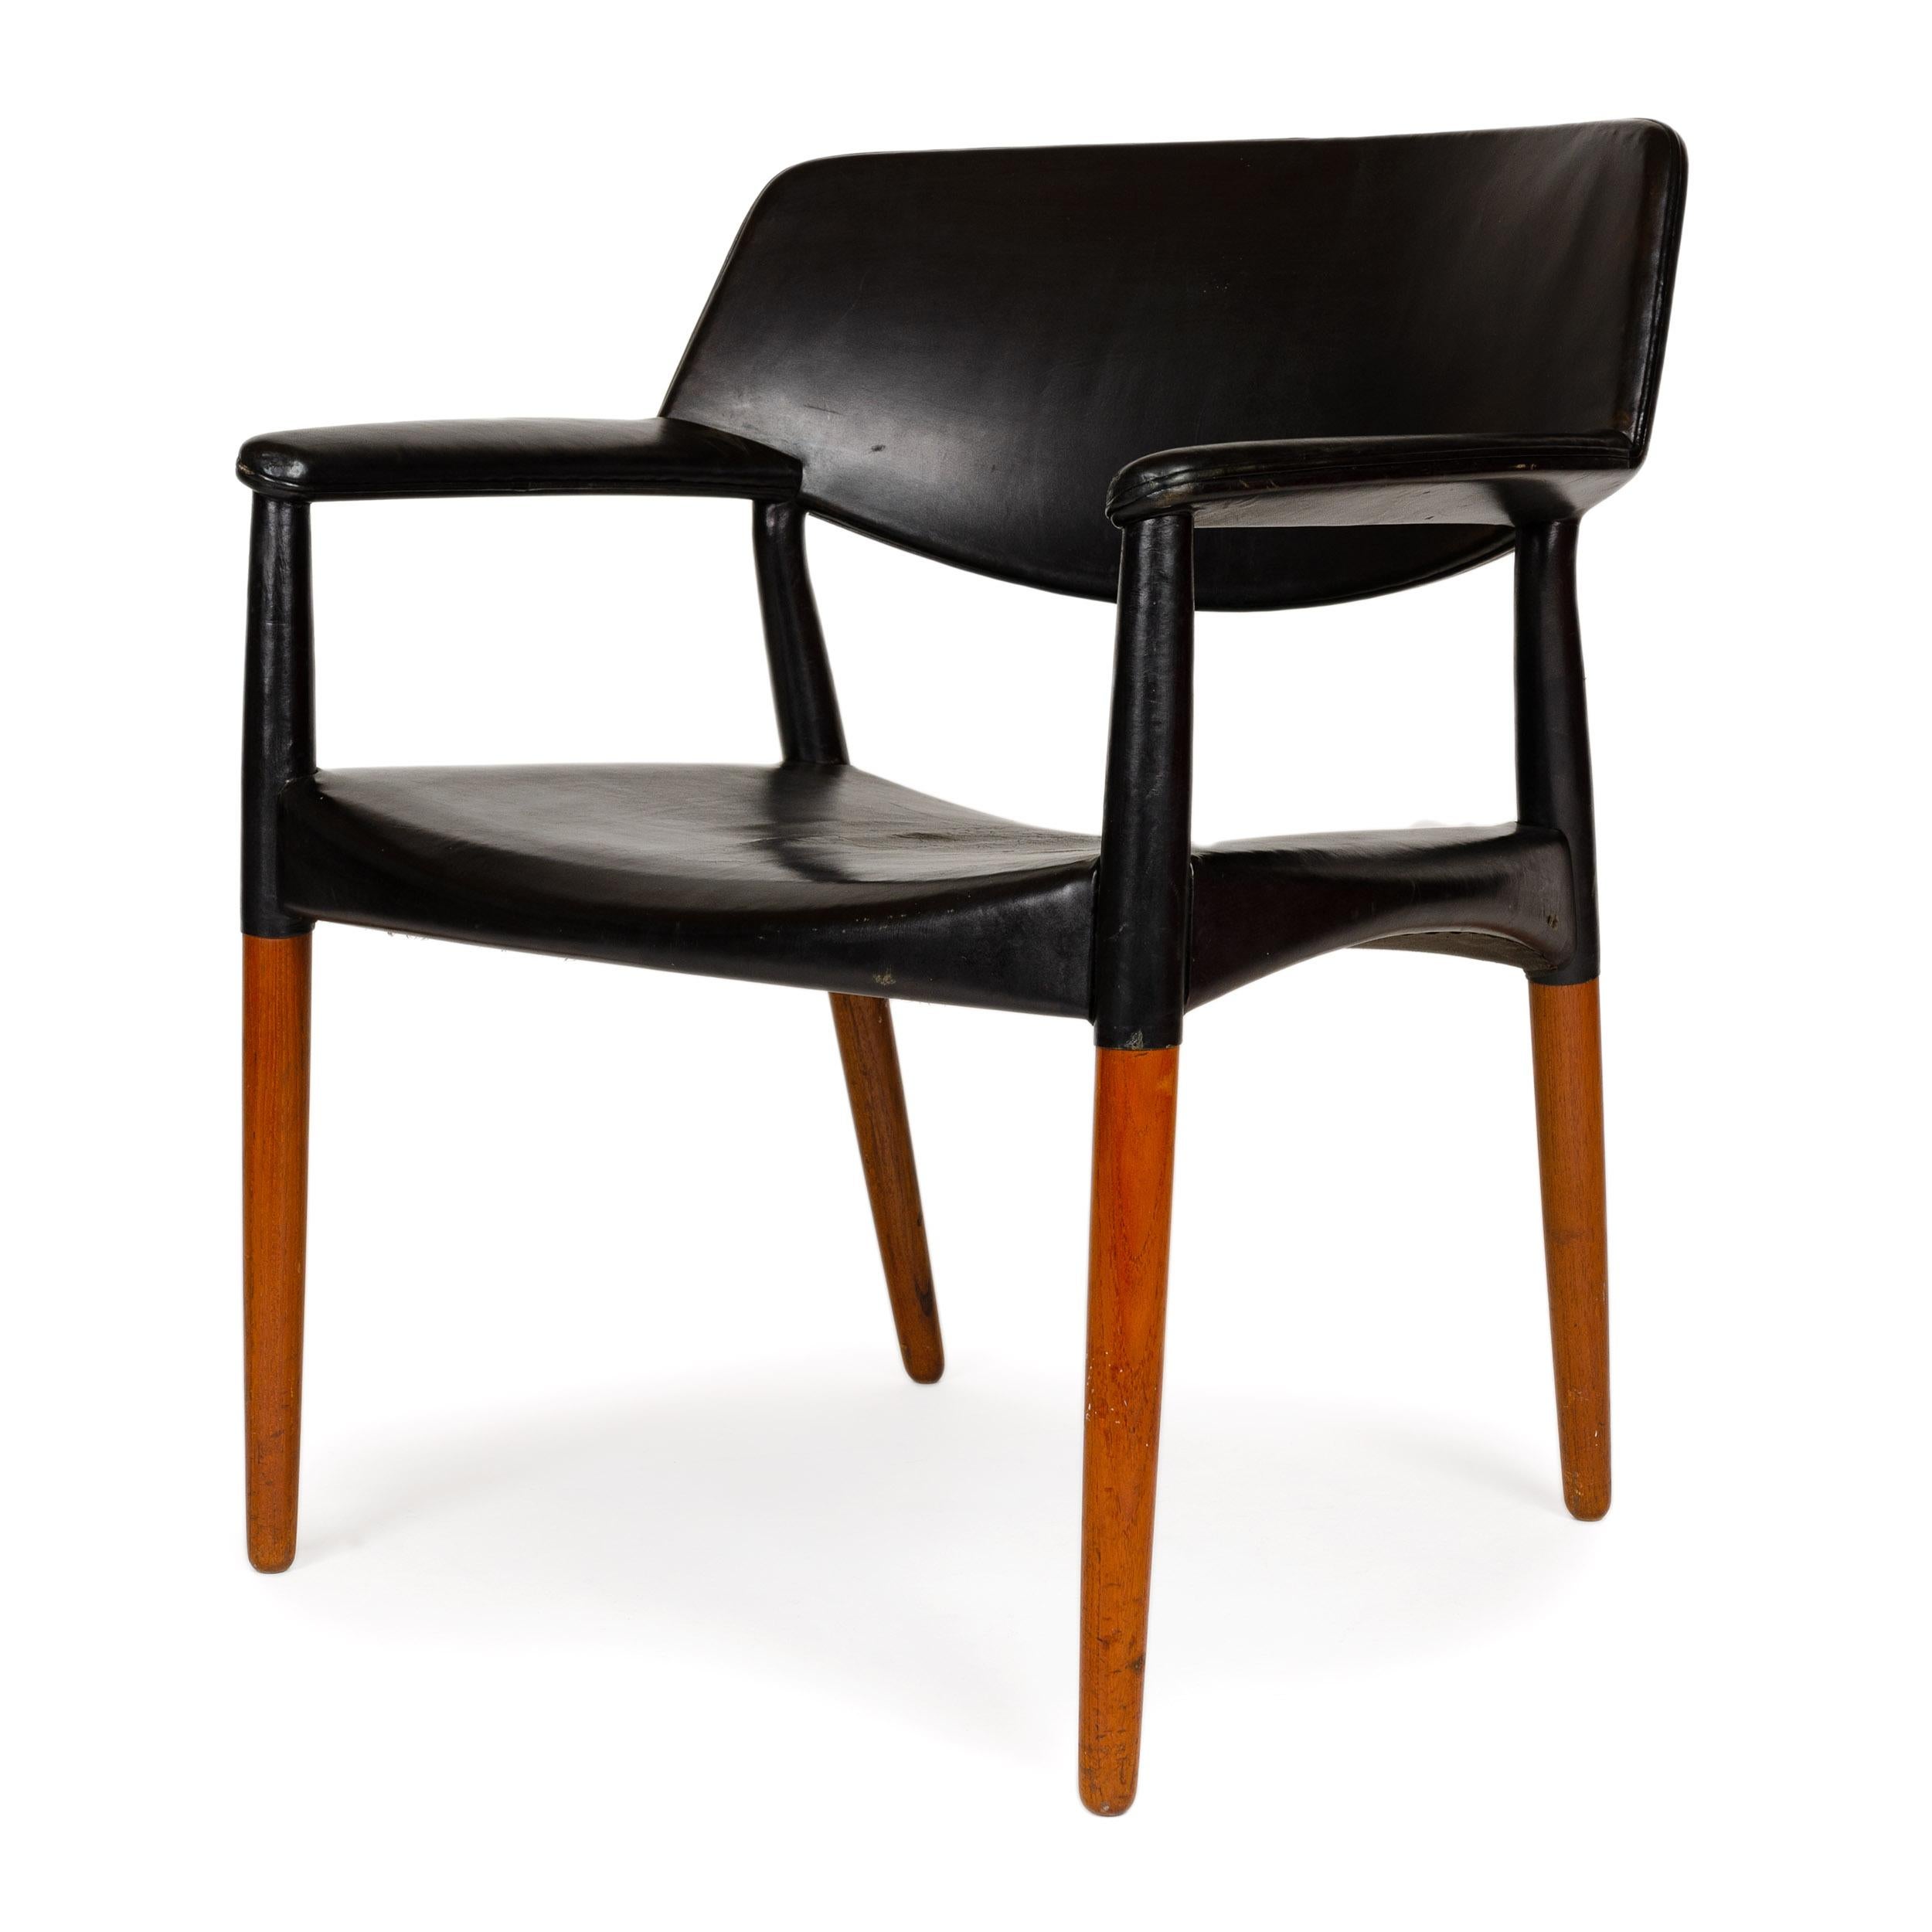 Un siège de conférence confortablement large (27,5'') en teck massif et cuir noir. Les designers ont habillé la moitié supérieure de la chaise de cuir noir, tandis que le bois exposé de la moitié inférieure est en teck naturel. Une courbe douce sous